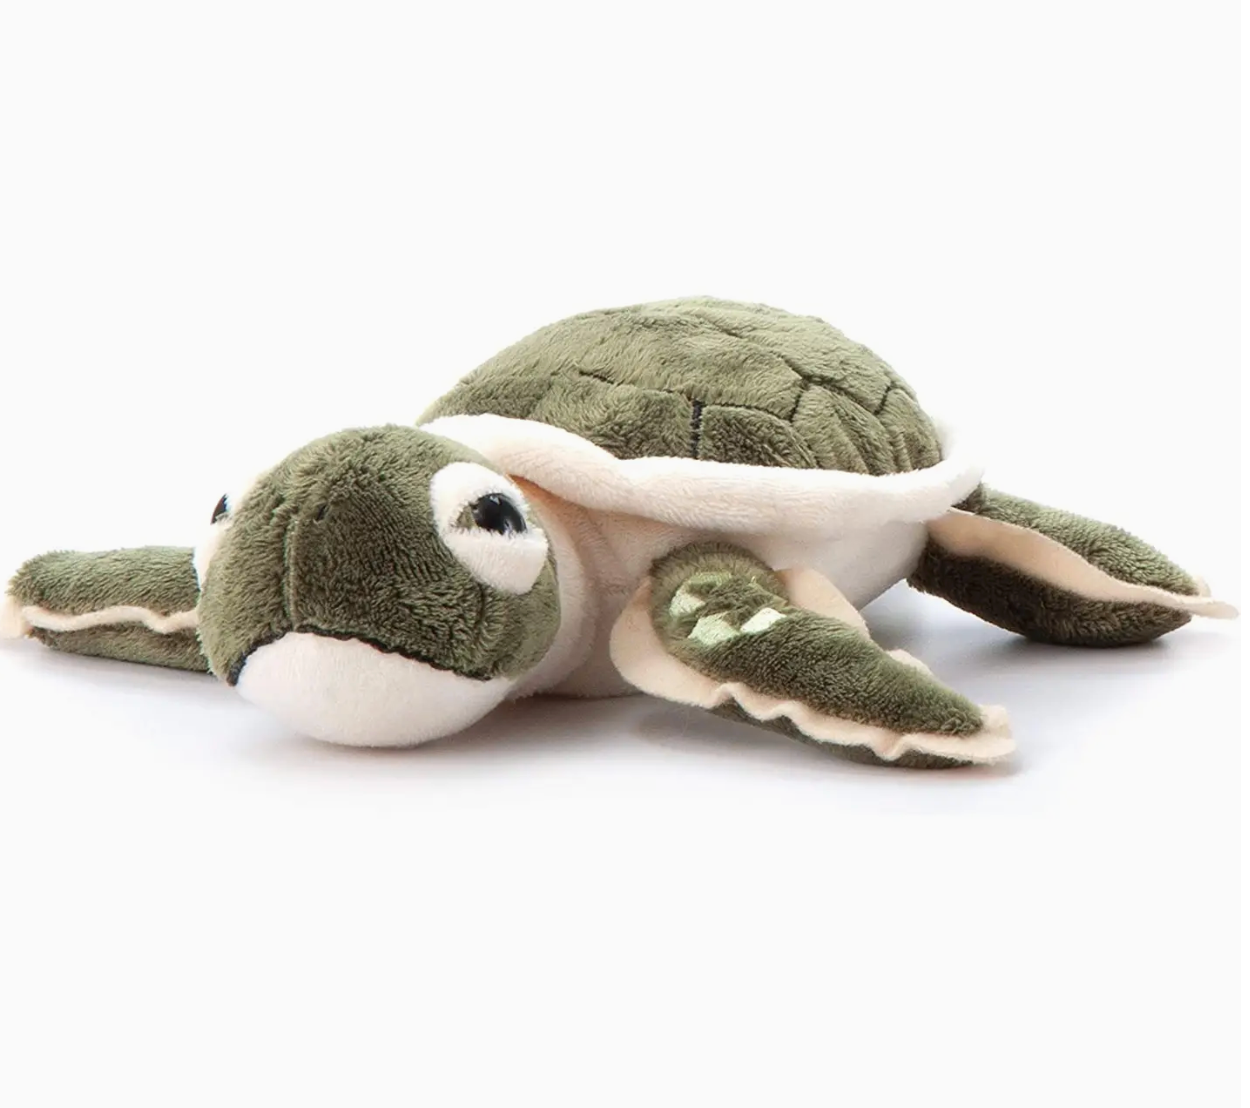 9" Hatchling Sea Turtle